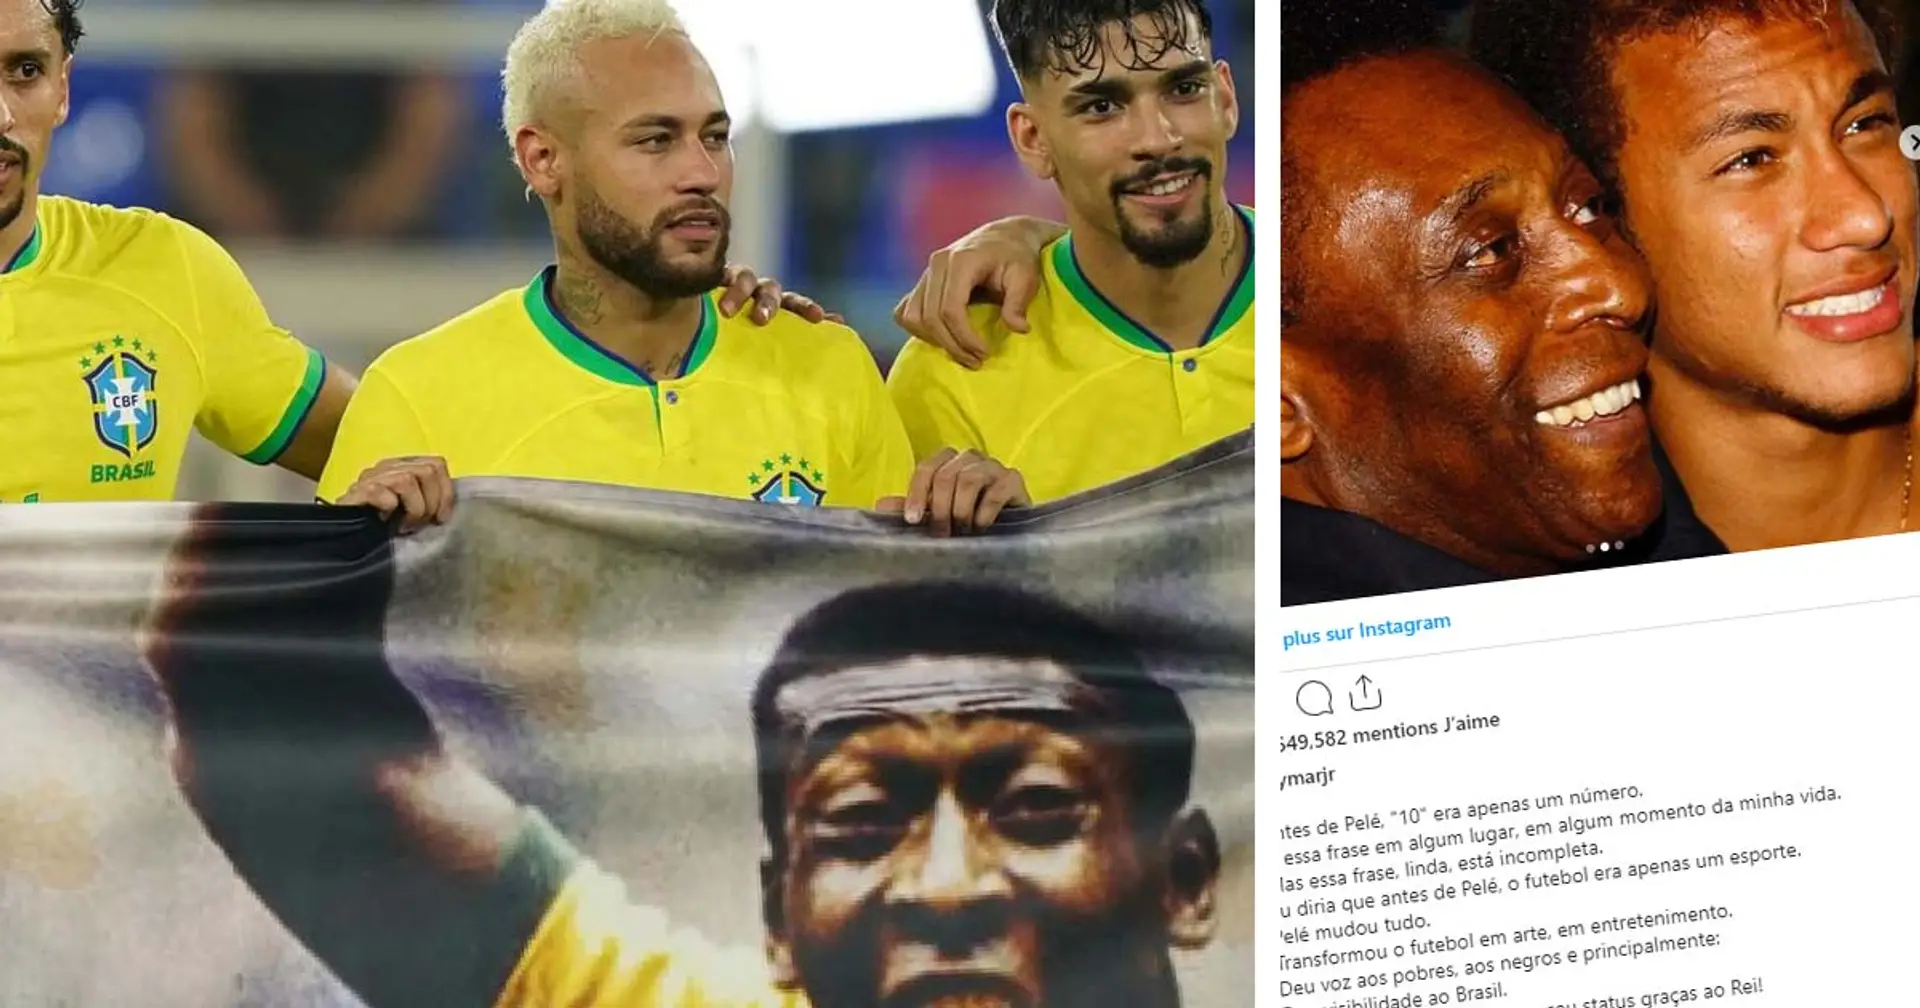 "Pelé a tout changé": Le vibrant hommage de Neymar résume parfaitement la carrière immense du Roi Pelé